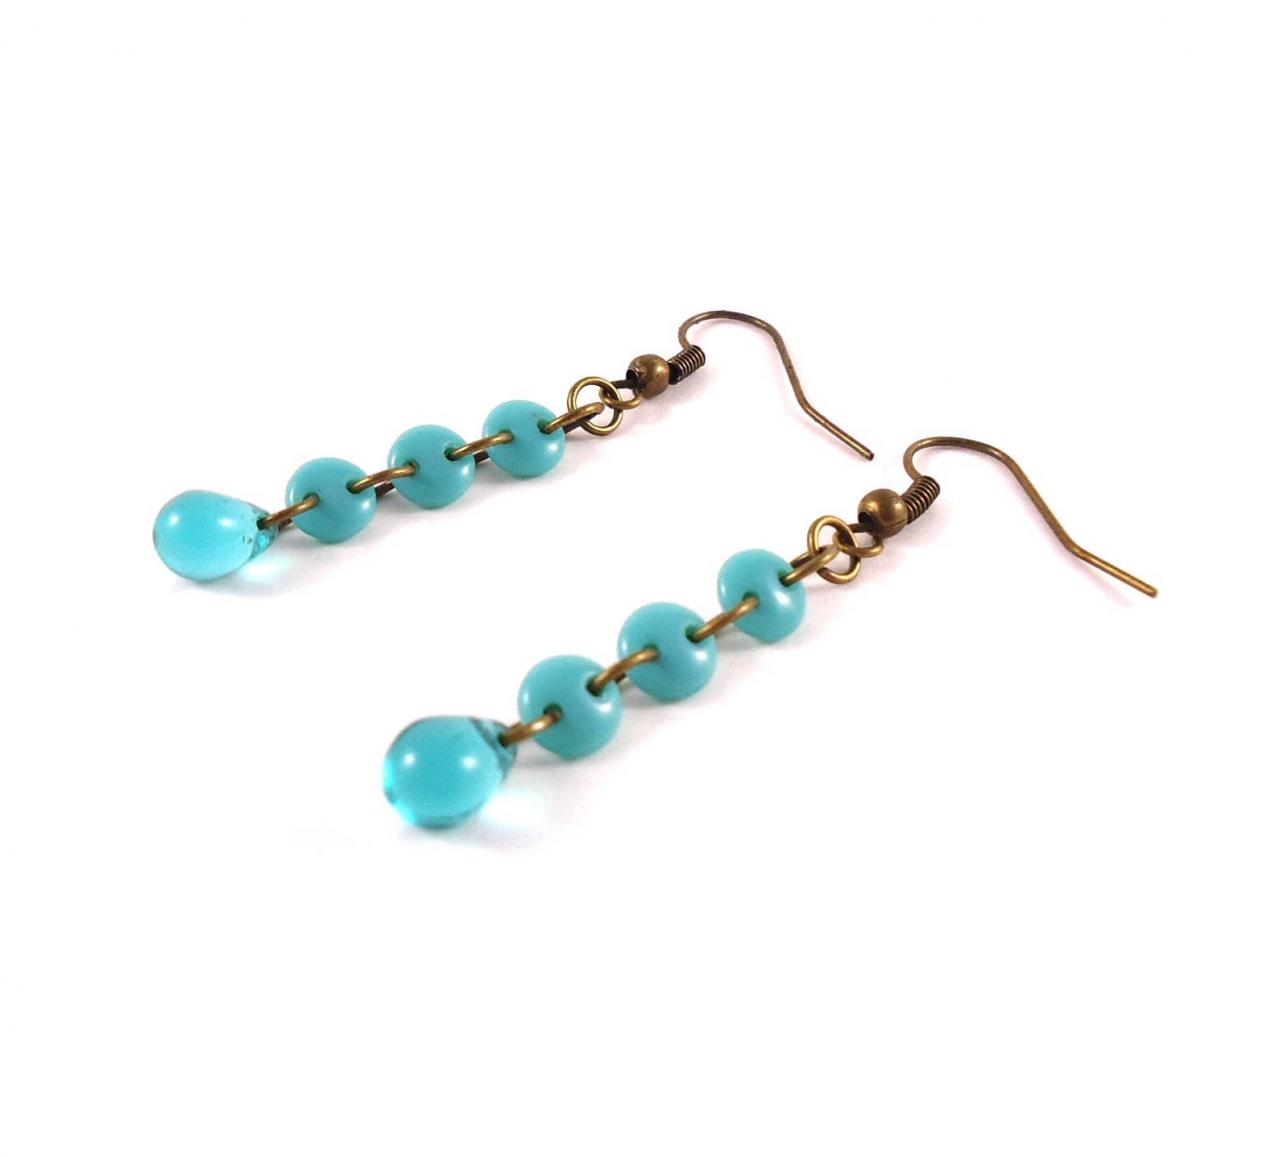 Boho Dainty Earrings - Gypsy Dainty Earrings - Dainty Boho Jewelry - Turquoise Small Earrings - Boho Small Earrings - Blue Minimalist Earrin